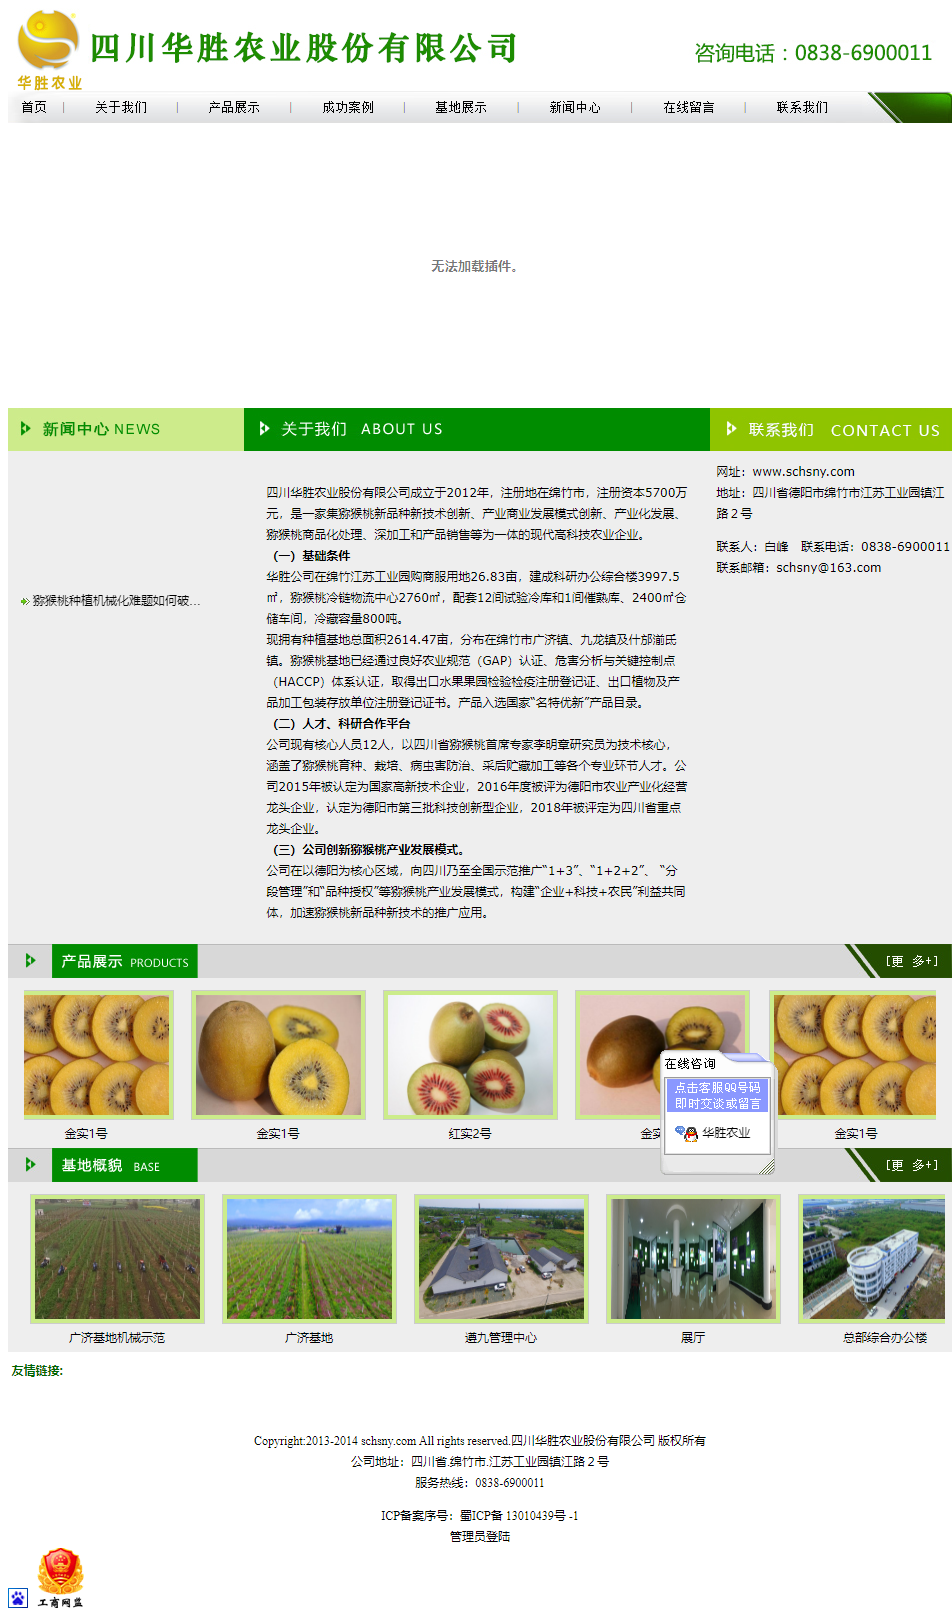 四川华胜农业股份有限公司网站案例